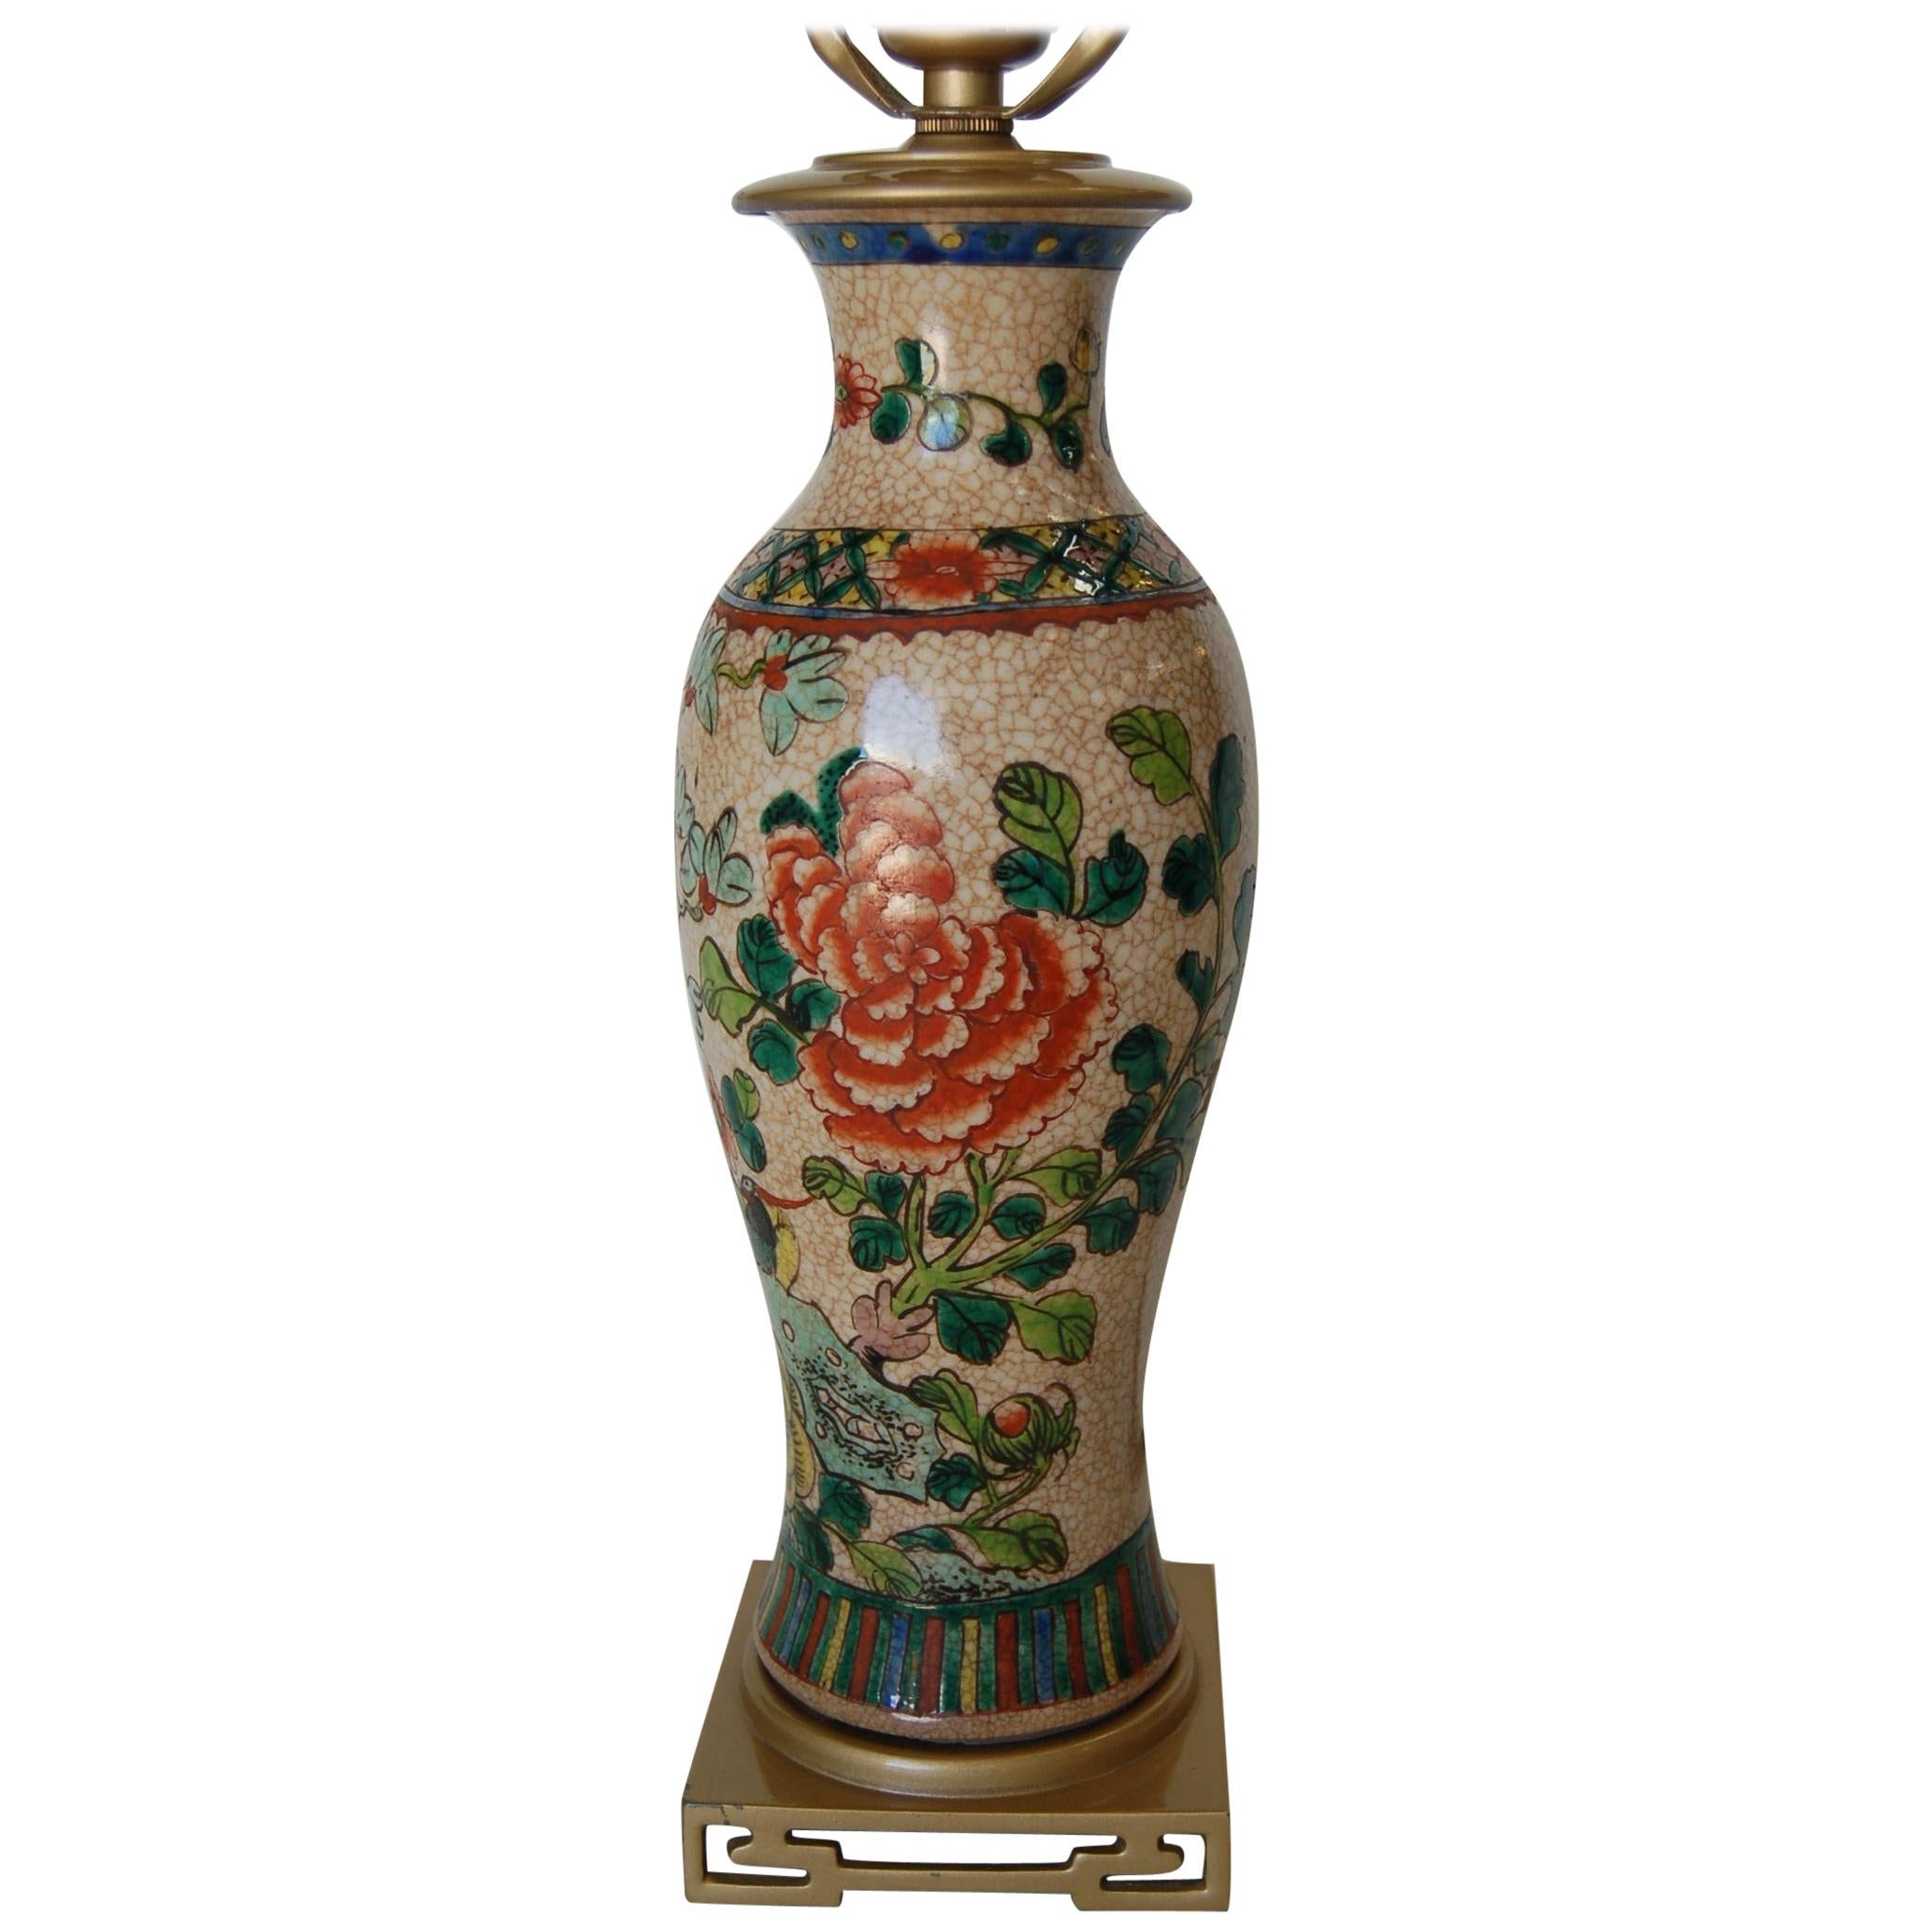 Lampe de table en céramique florale asiatique peinte à la main d'après-guerre